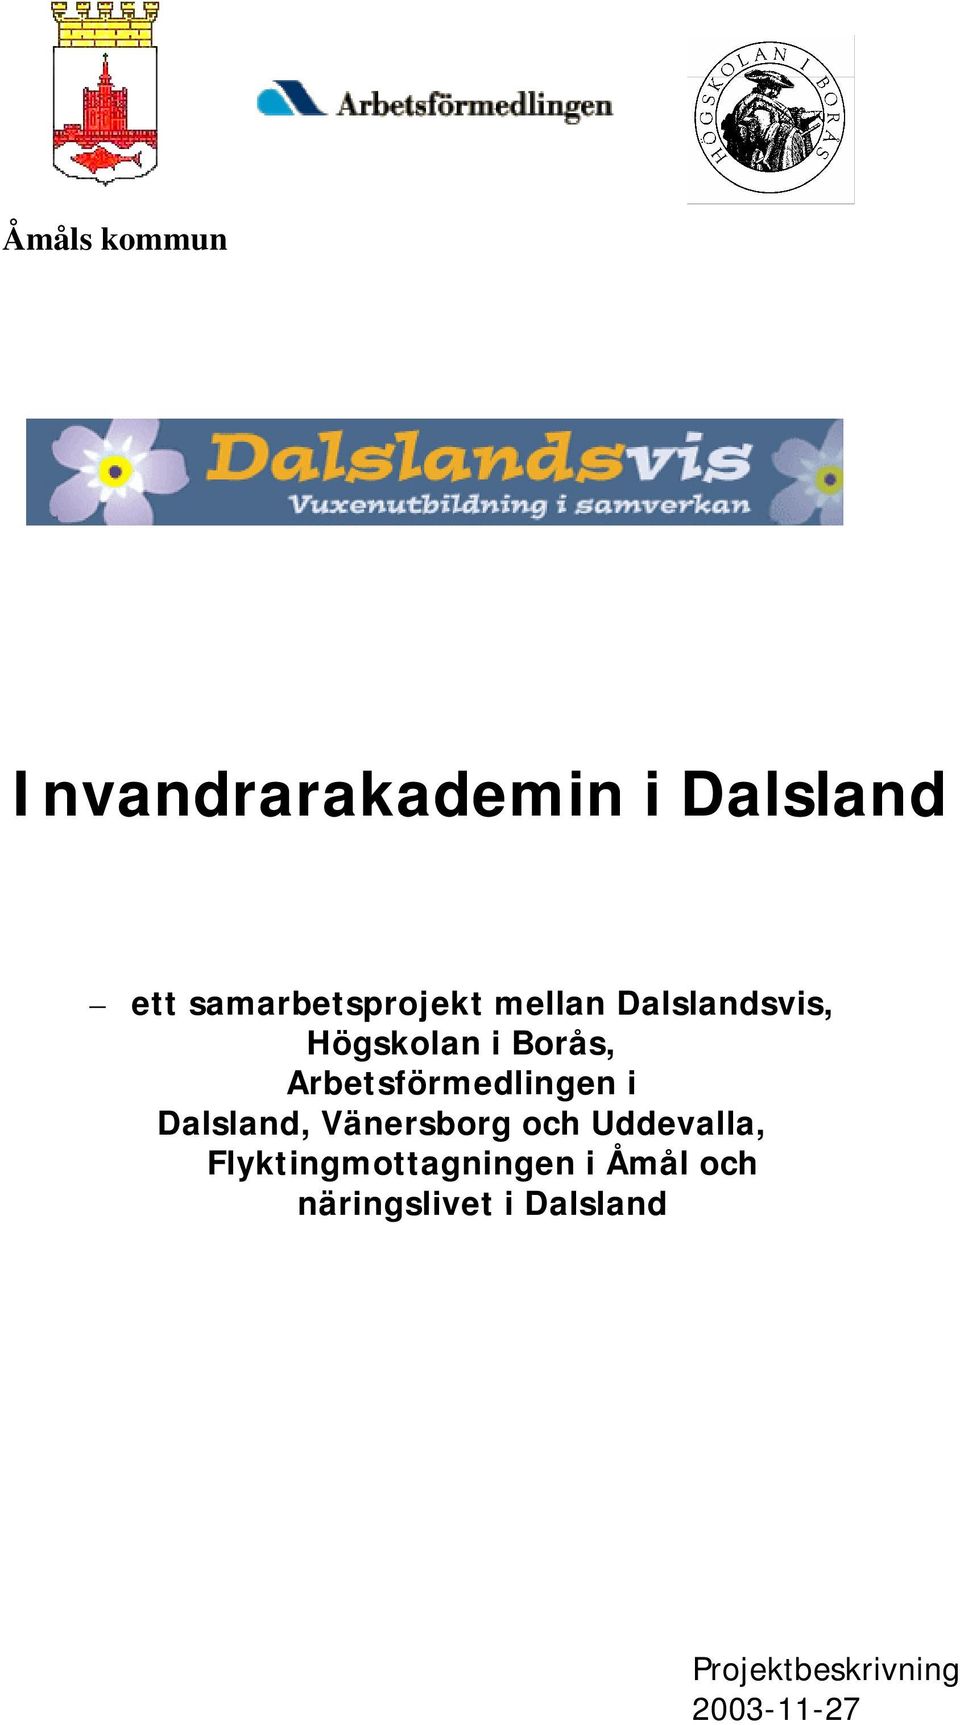 Arbetsförmedlingen i Dalsland, Vänersborg och Uddevalla,